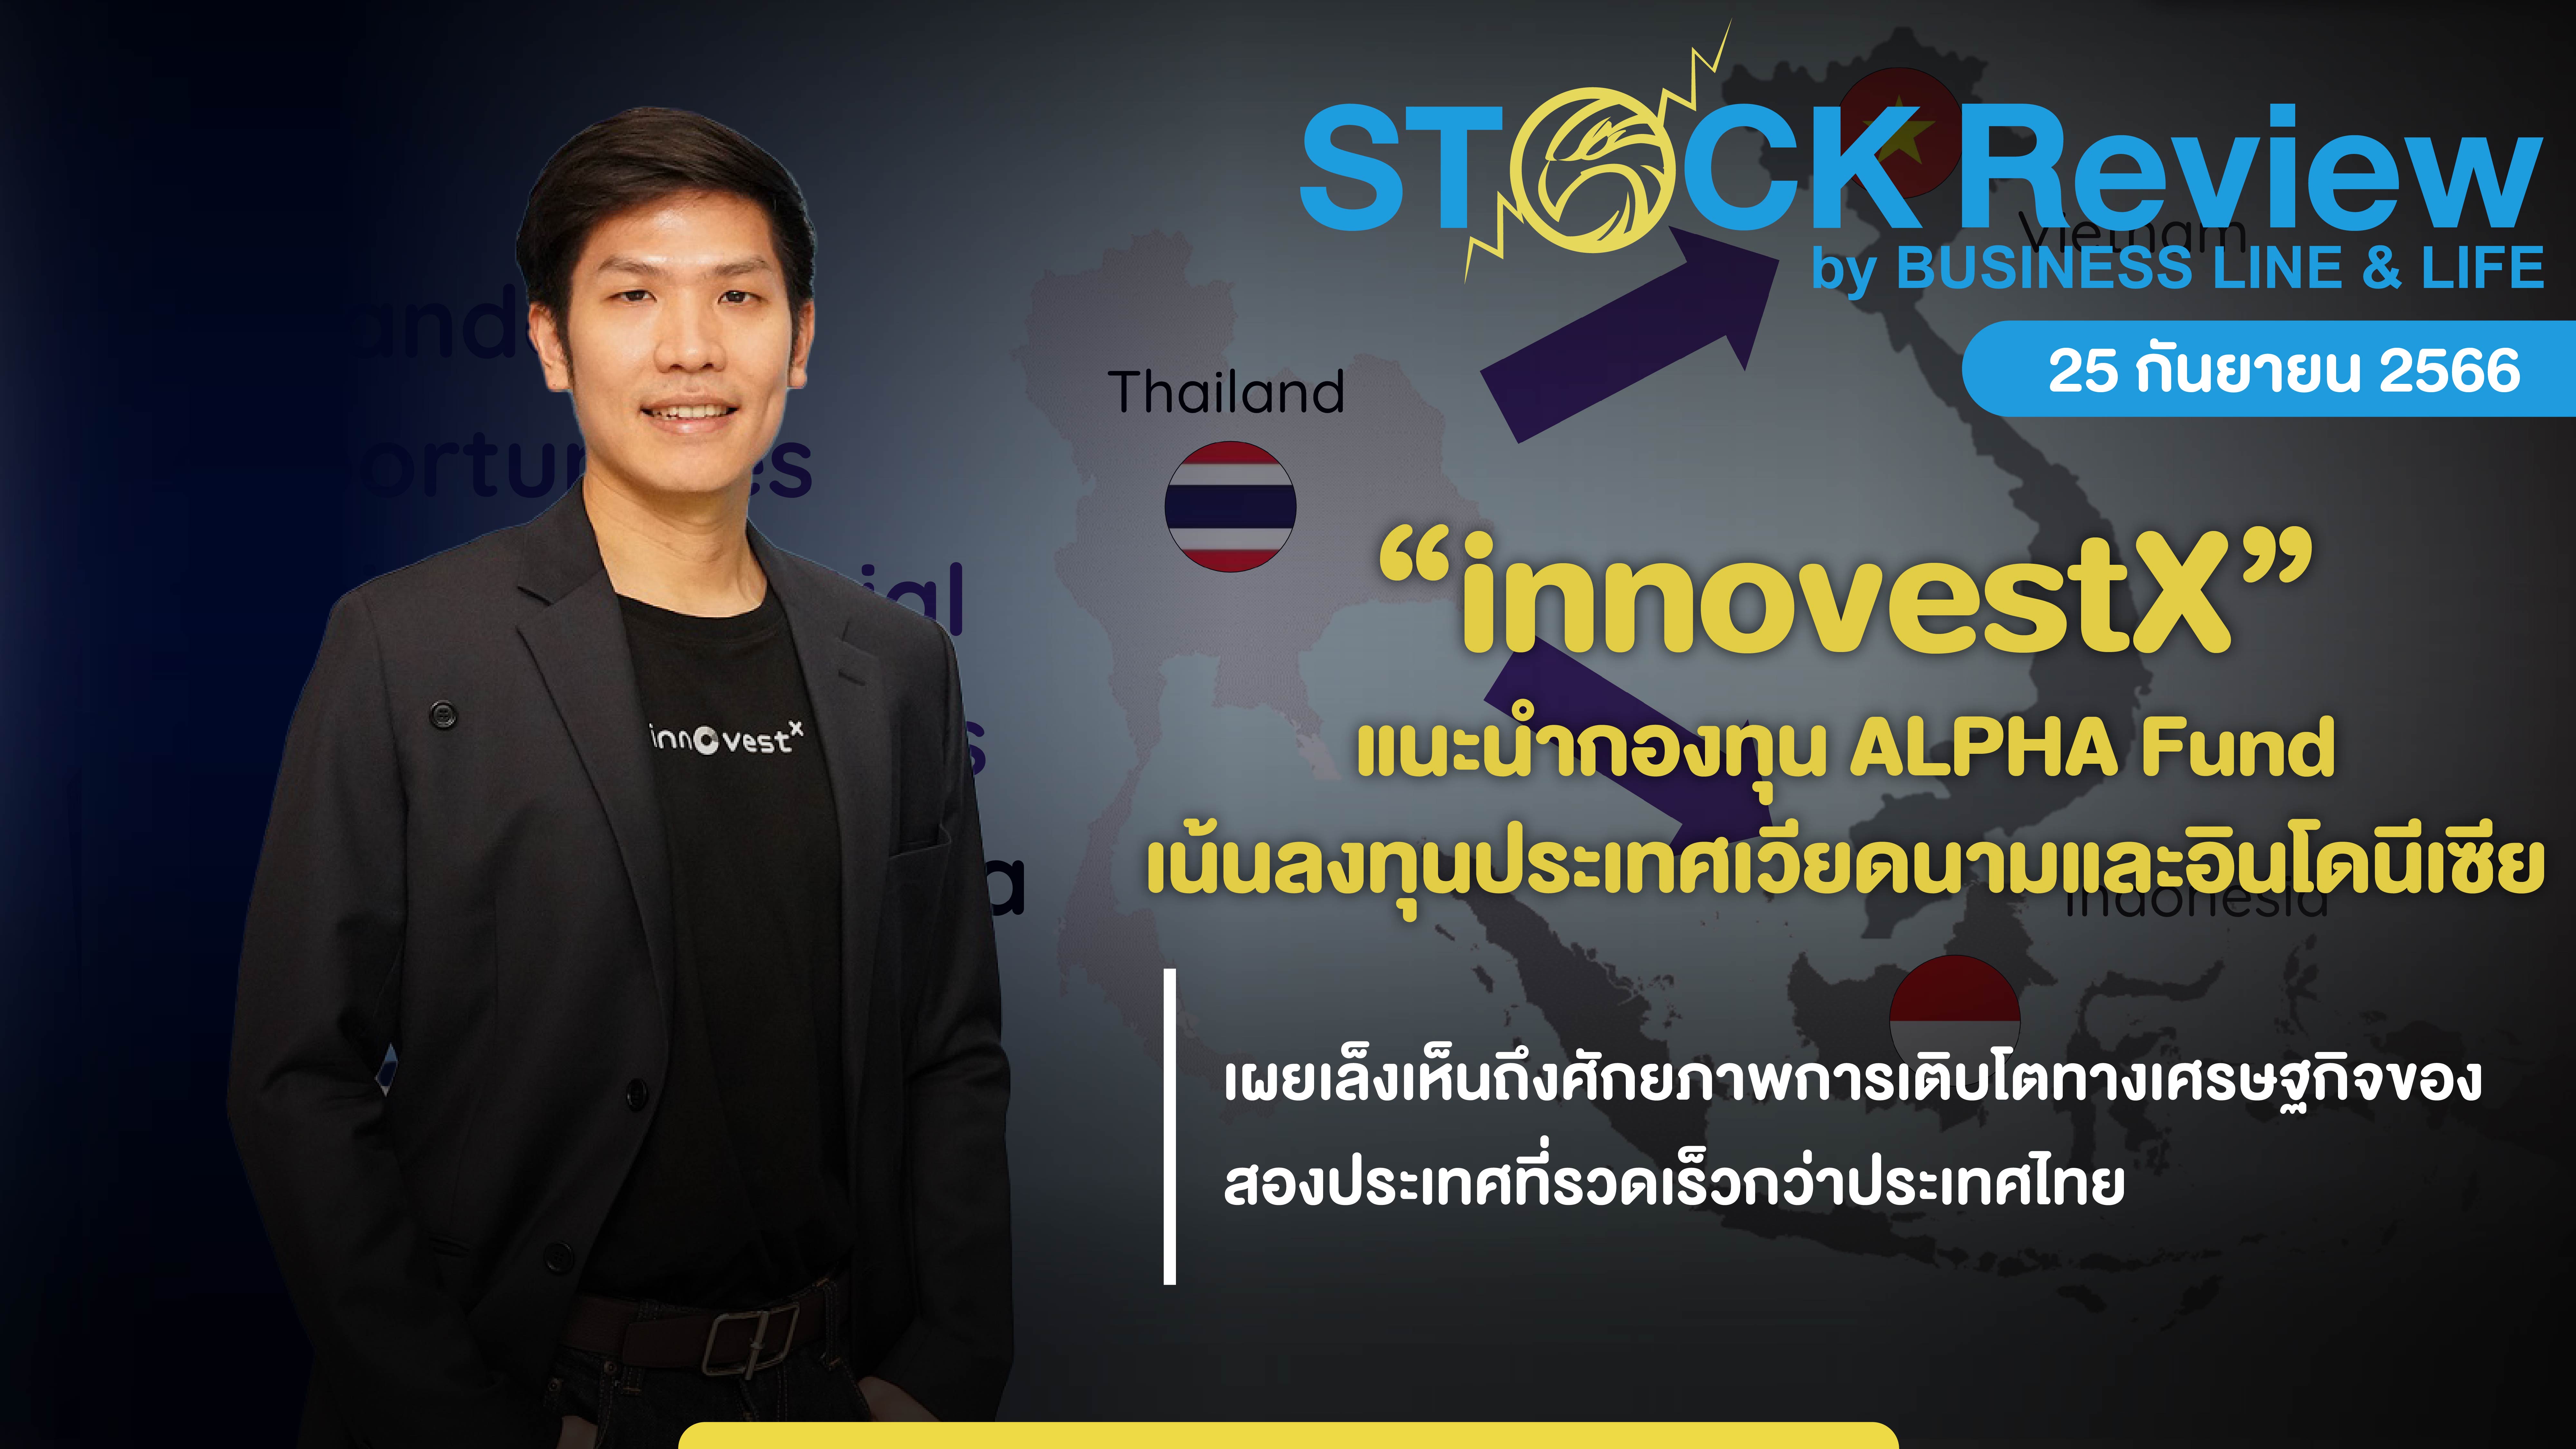 innovestX แนะนำกองทุนเน้นลงทุนประเทศเวียดนามและอินโดนีเซีย “Alpha Fund”